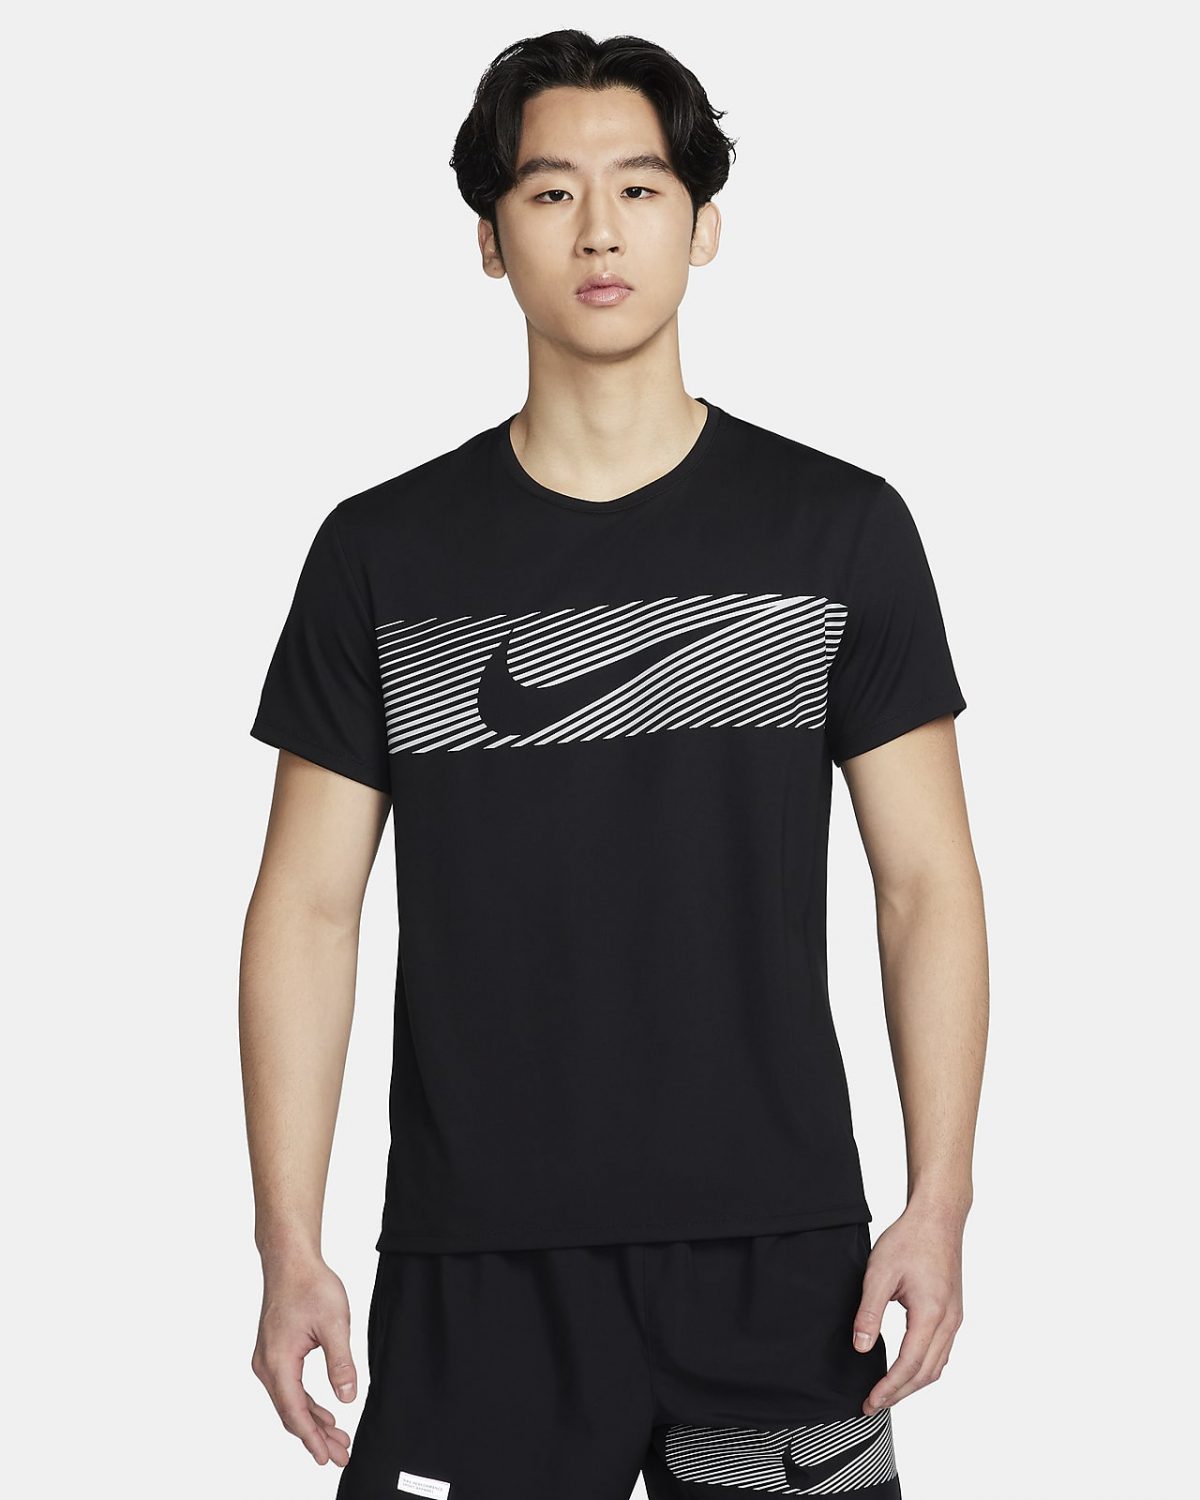 Мужской топ Nike Miler Flash черный фото